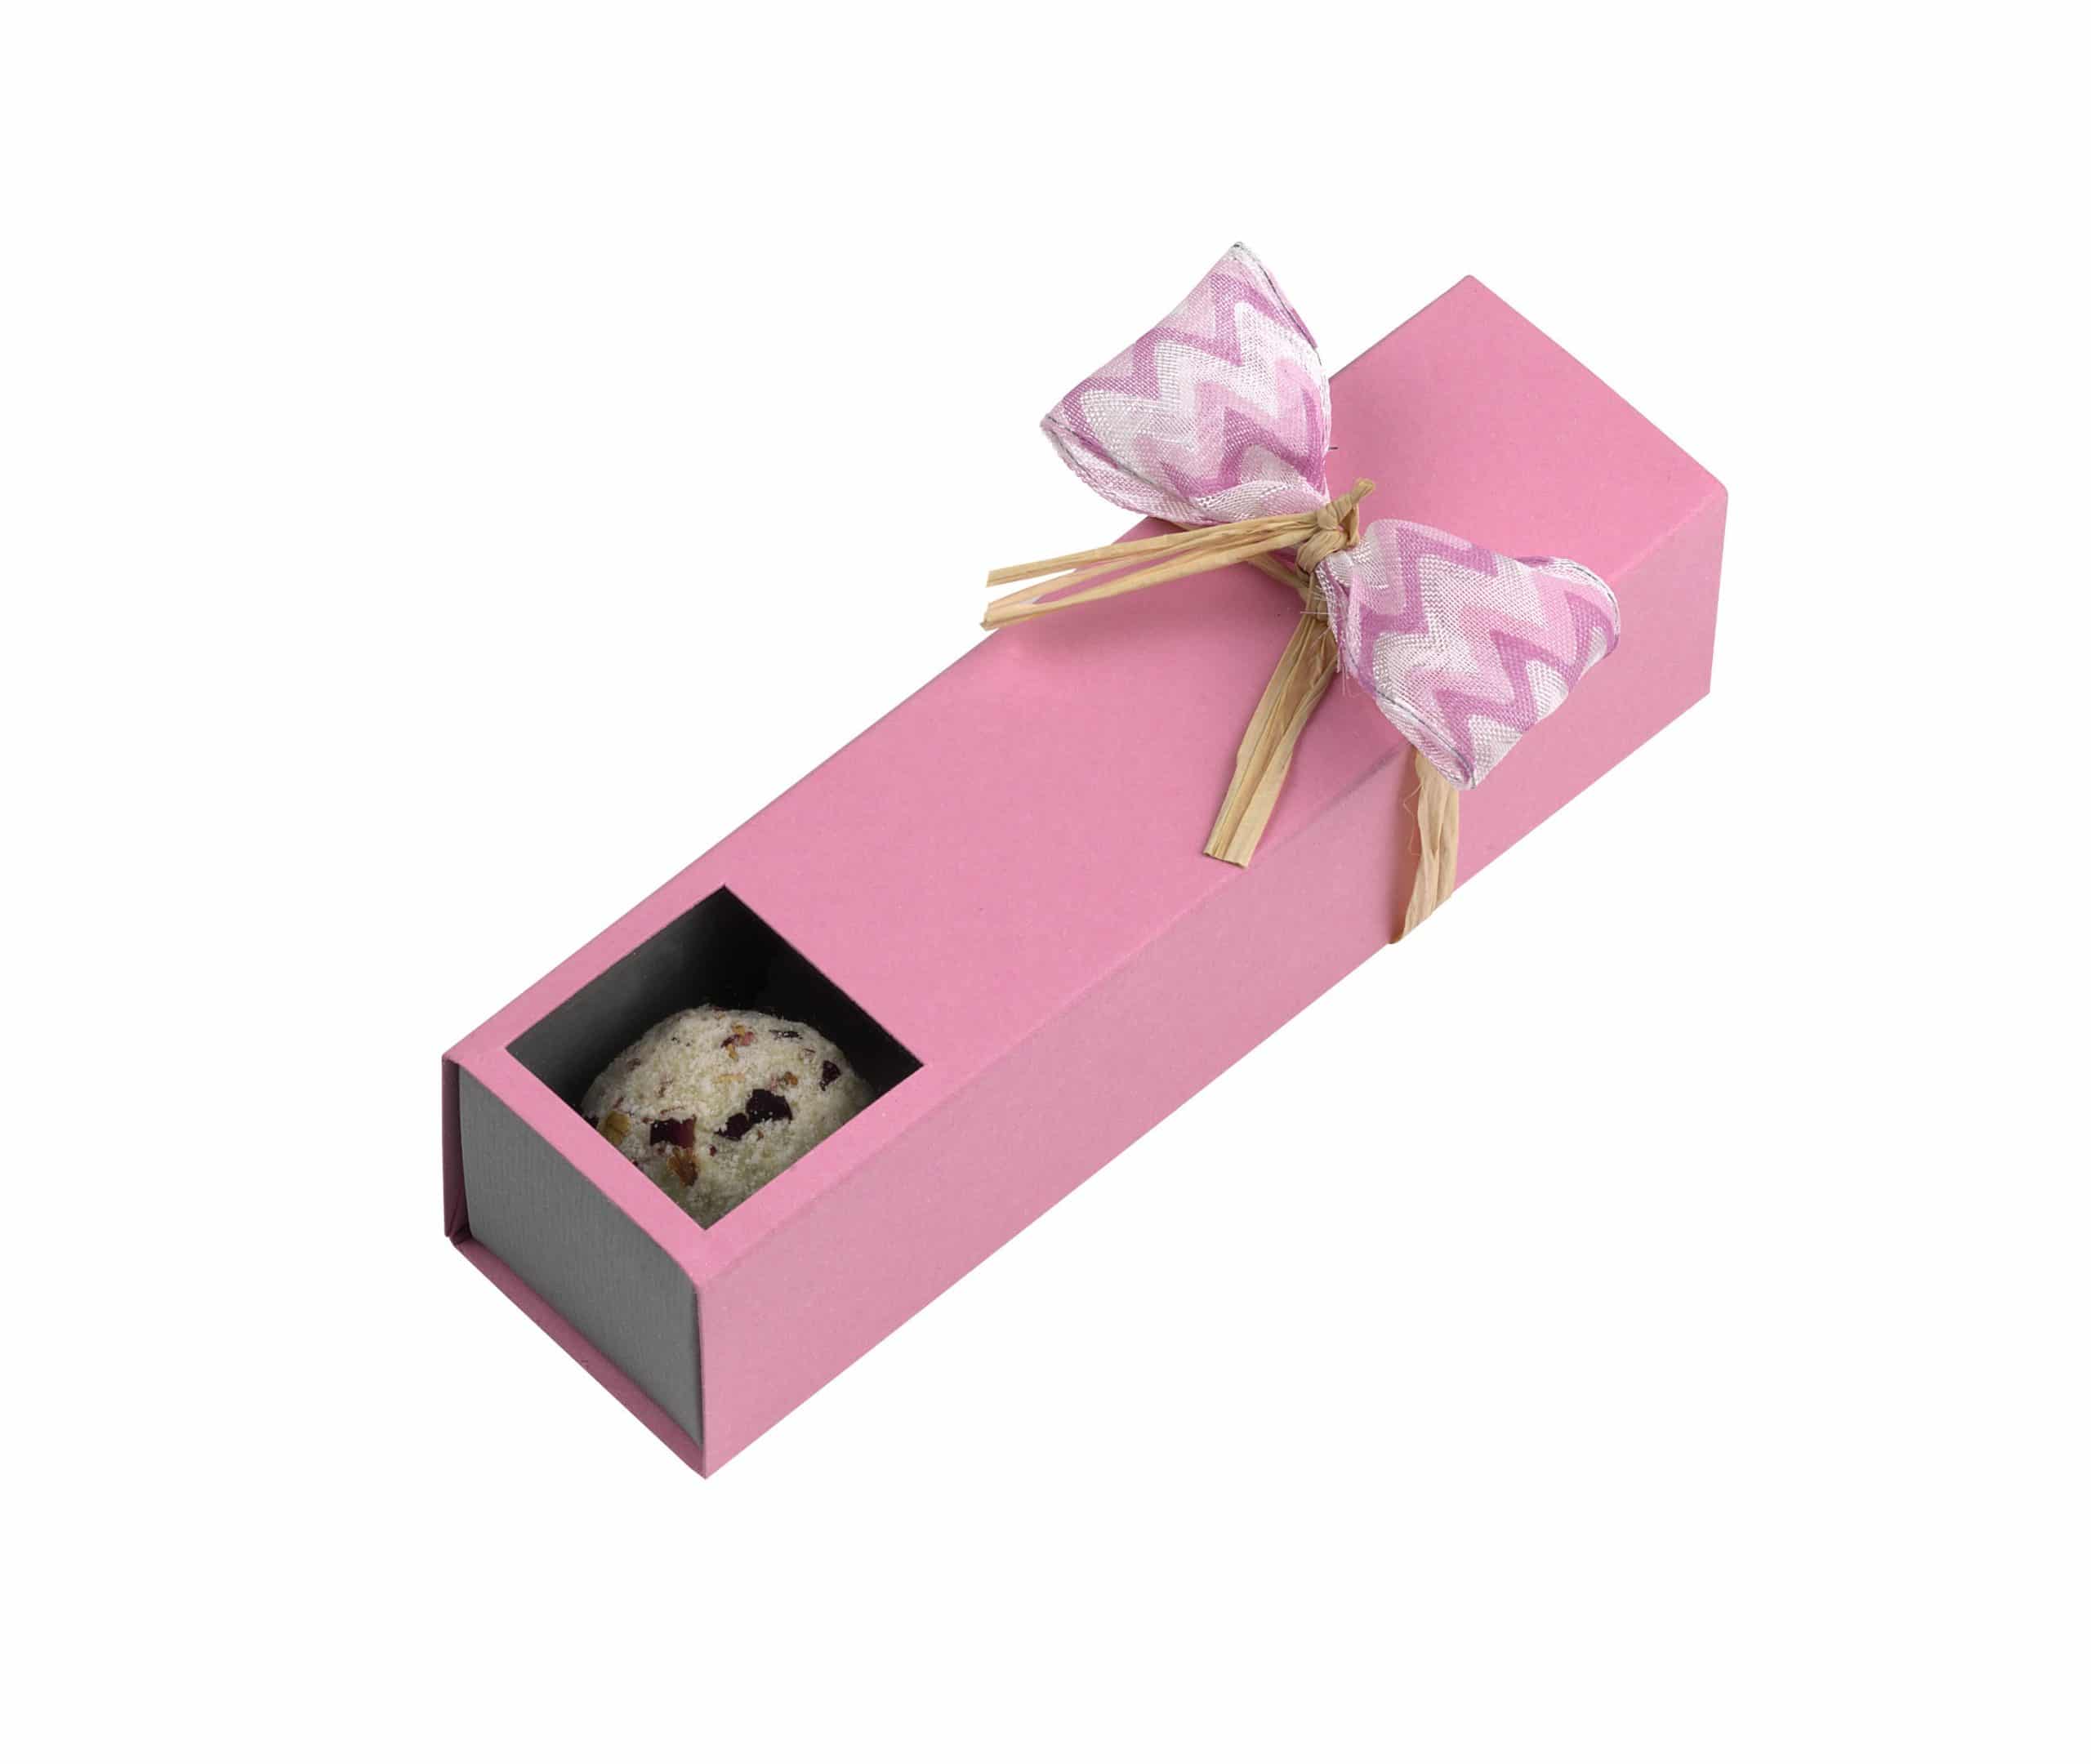 4er Stange "Rosenzauber" von Schell Schokoladen hat eine pinke Verpackung mit einer pinken Schleife an einem Strohband.